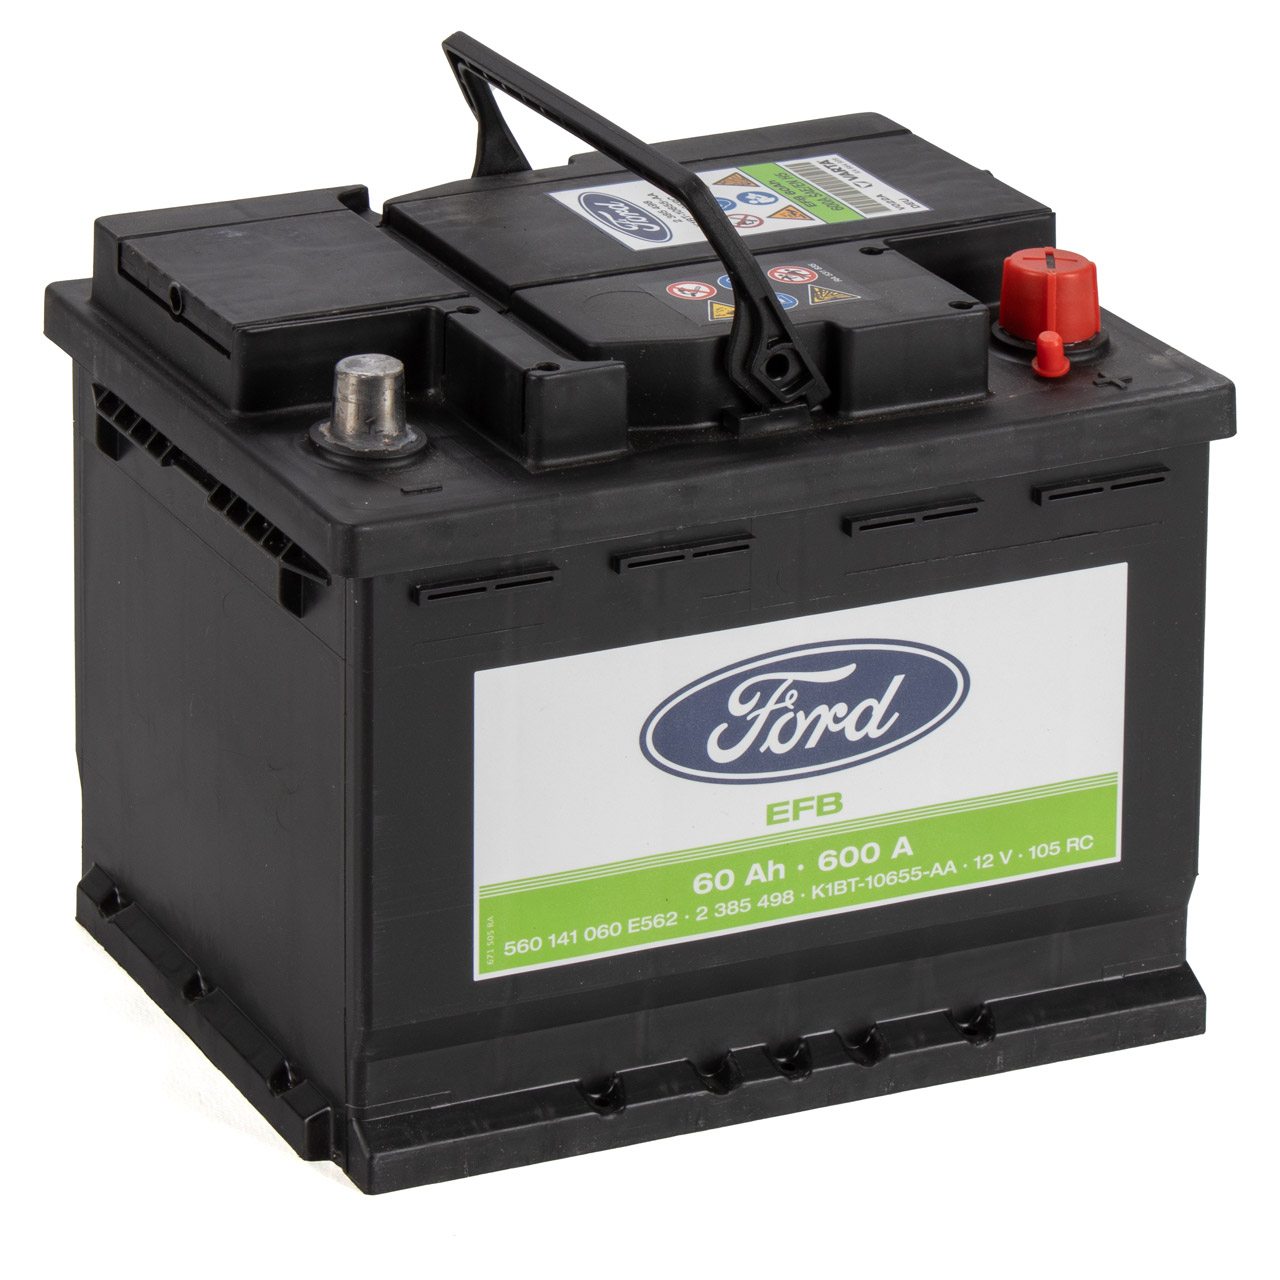 ORIGINAL Ford EFB Autobatterie Batterie Starterbatterie 12V 60Ah 600A 2385498